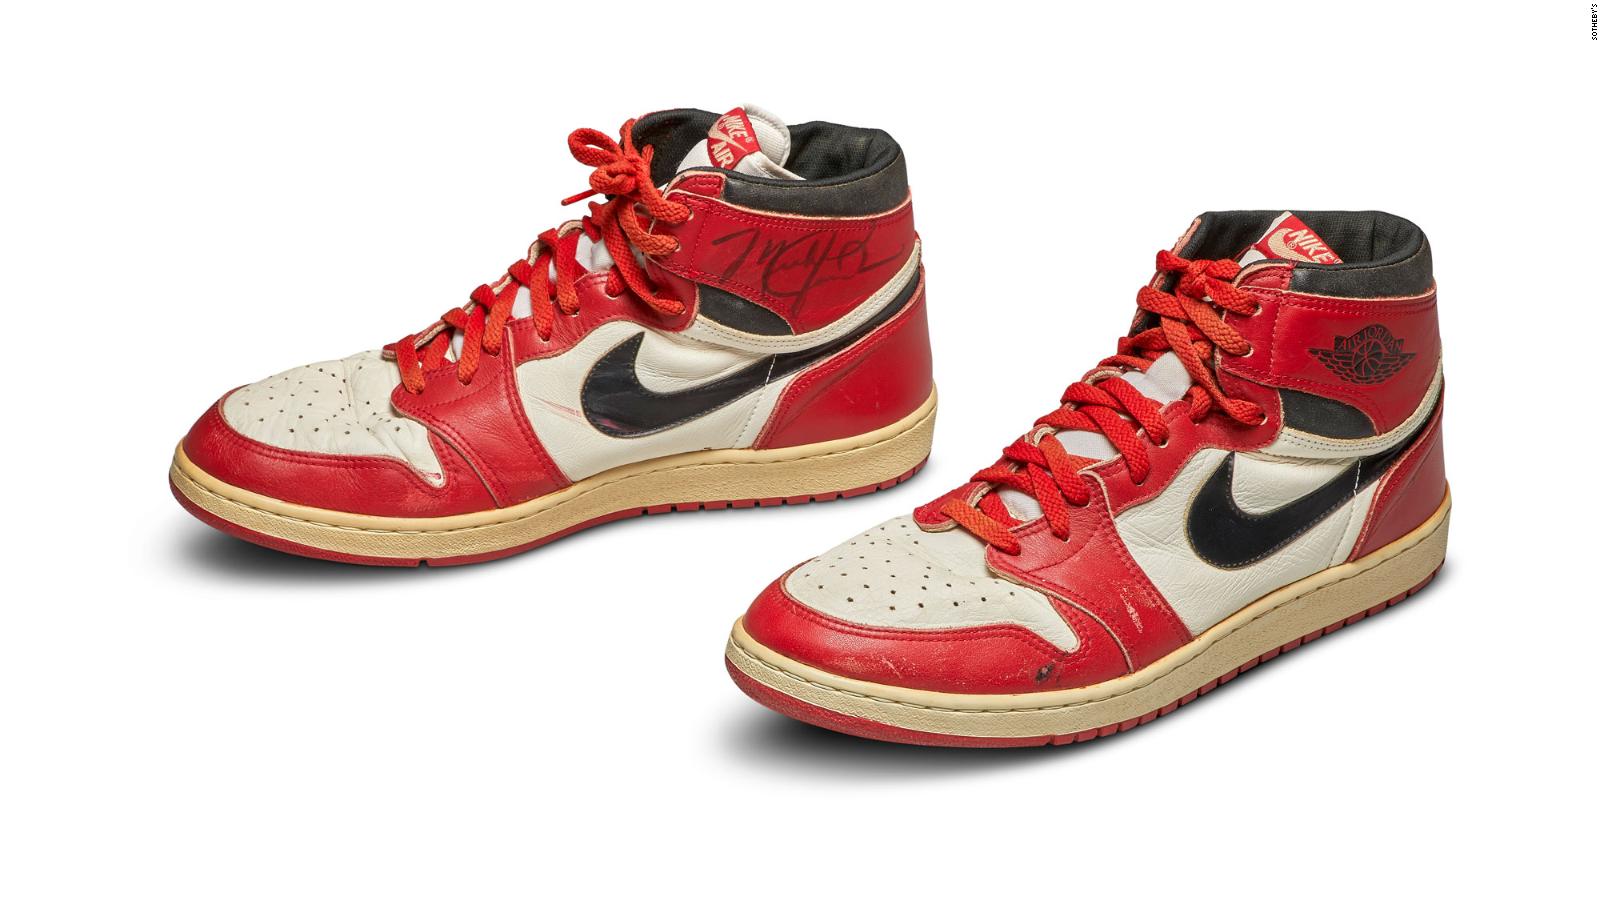 Nike Air Jordan 1s from 1985 